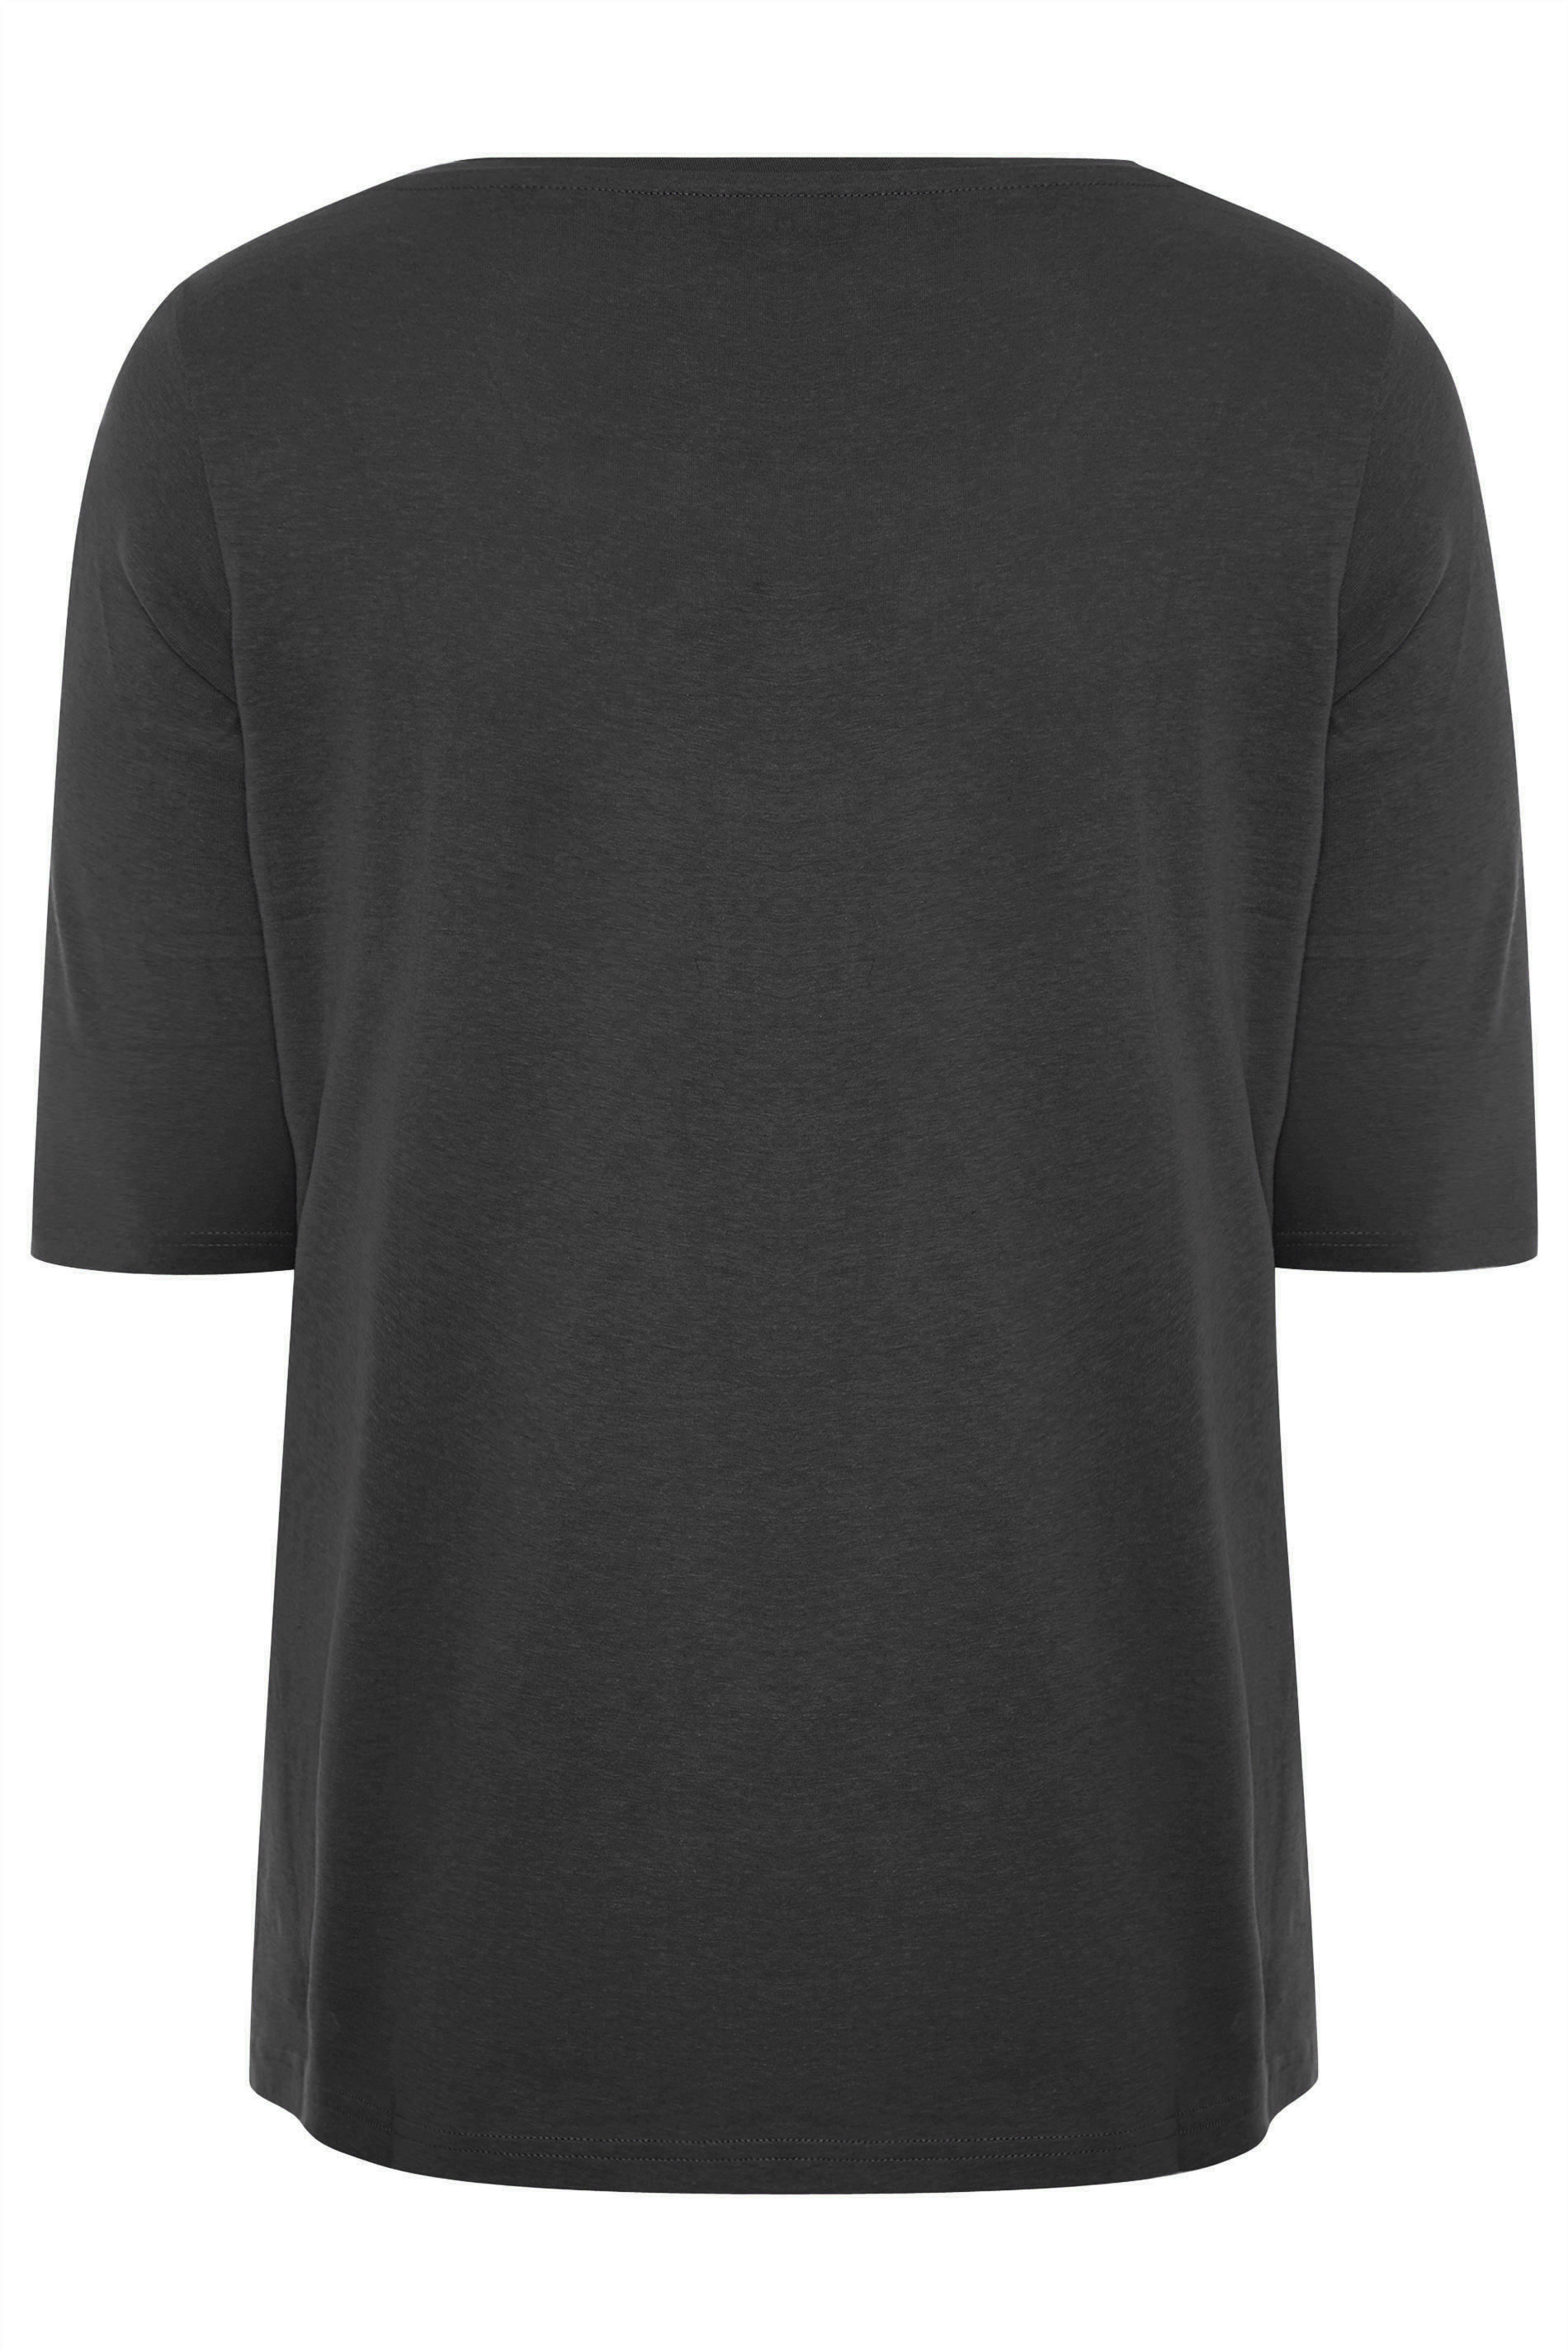 Grande taille  Tops Grande taille  T-Shirts Basiques & Débardeurs | Top Noir en Coton Encolure en V - RG75023